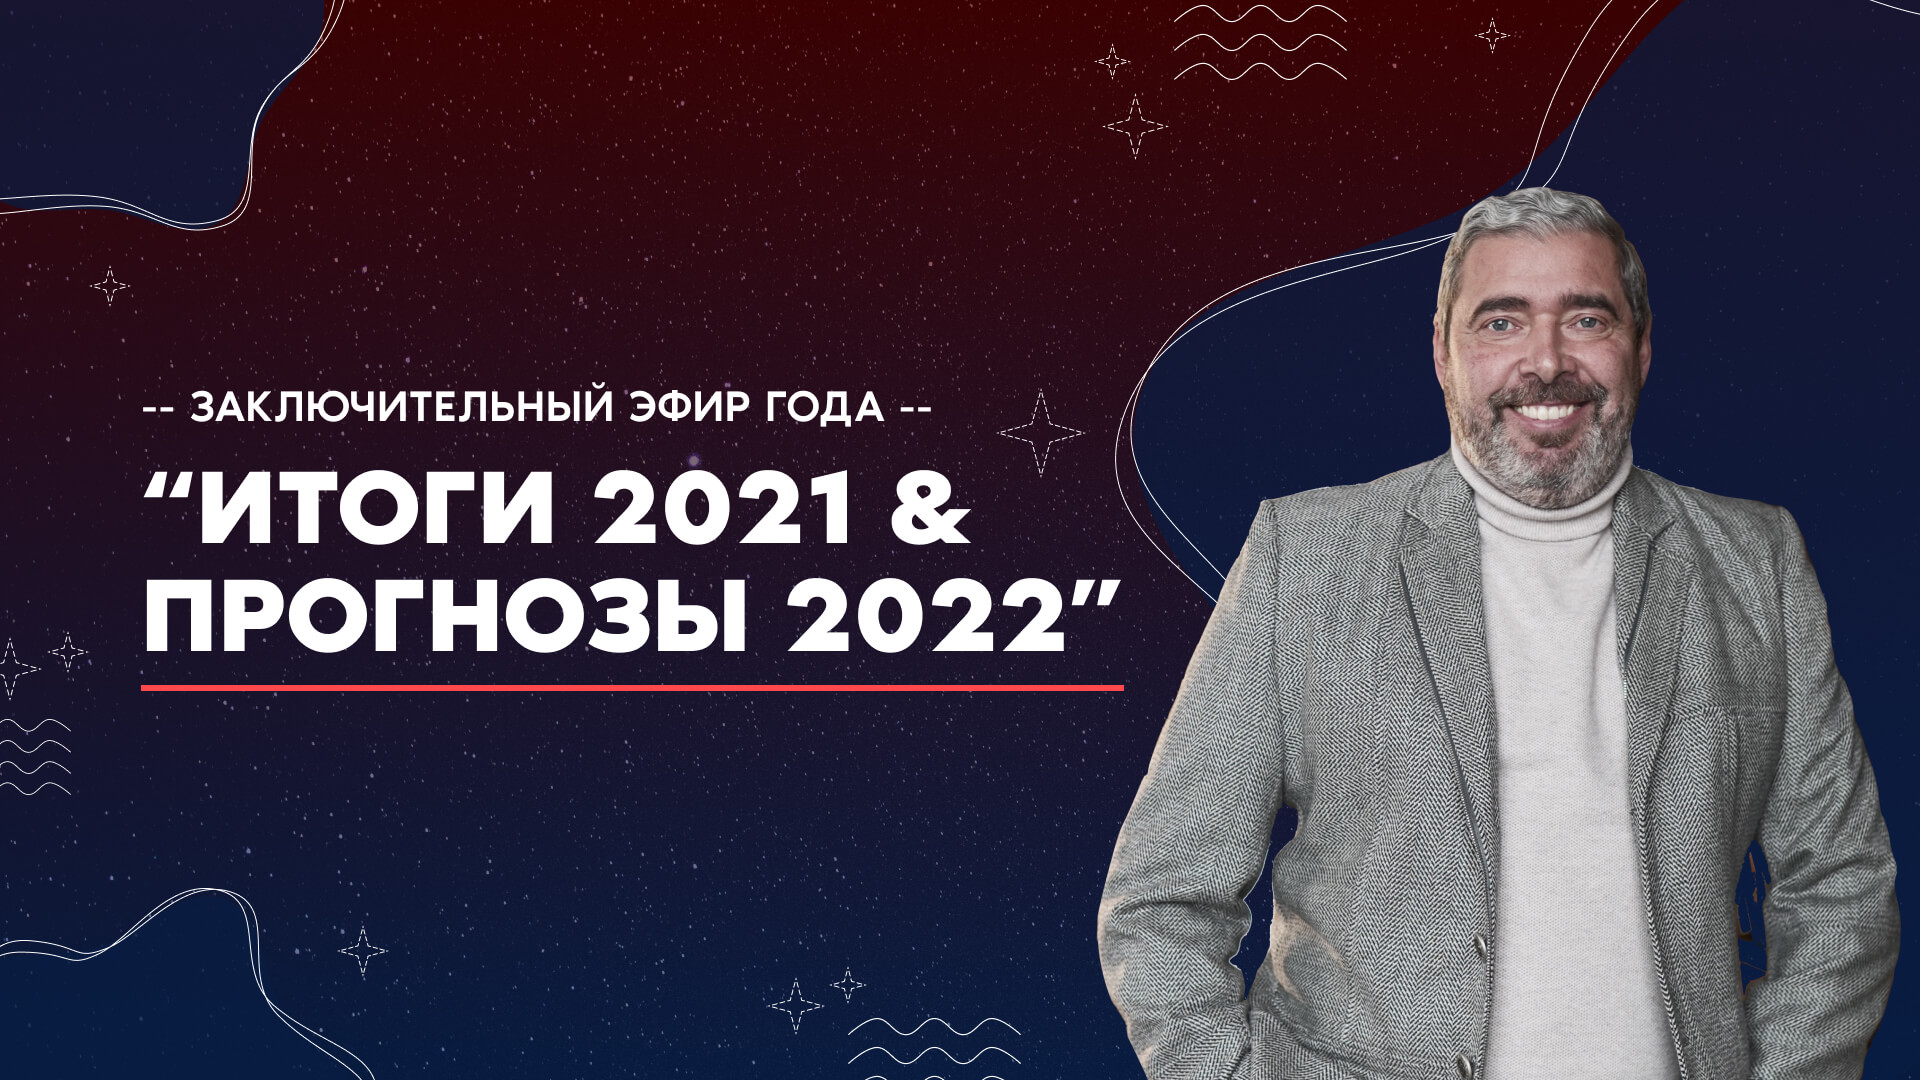 Итоги 2021 & Прогнозы на 2022